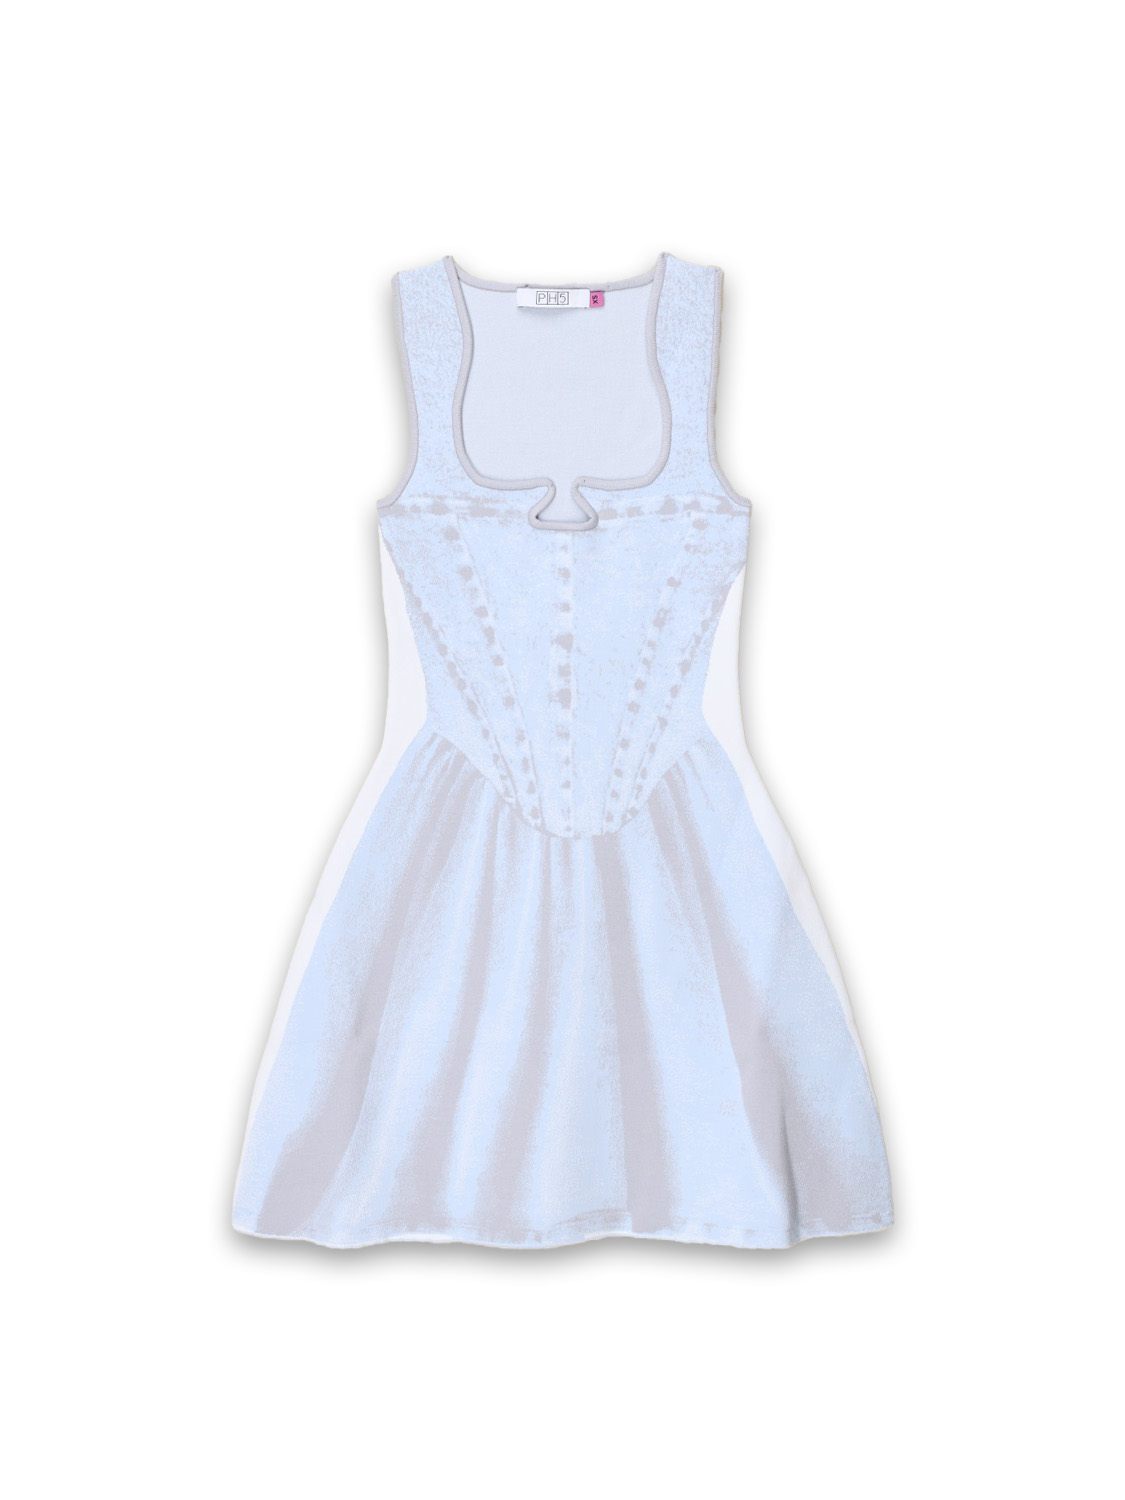 PH5 Poppy - Stretched knitwear mini dress with denim print  grey M